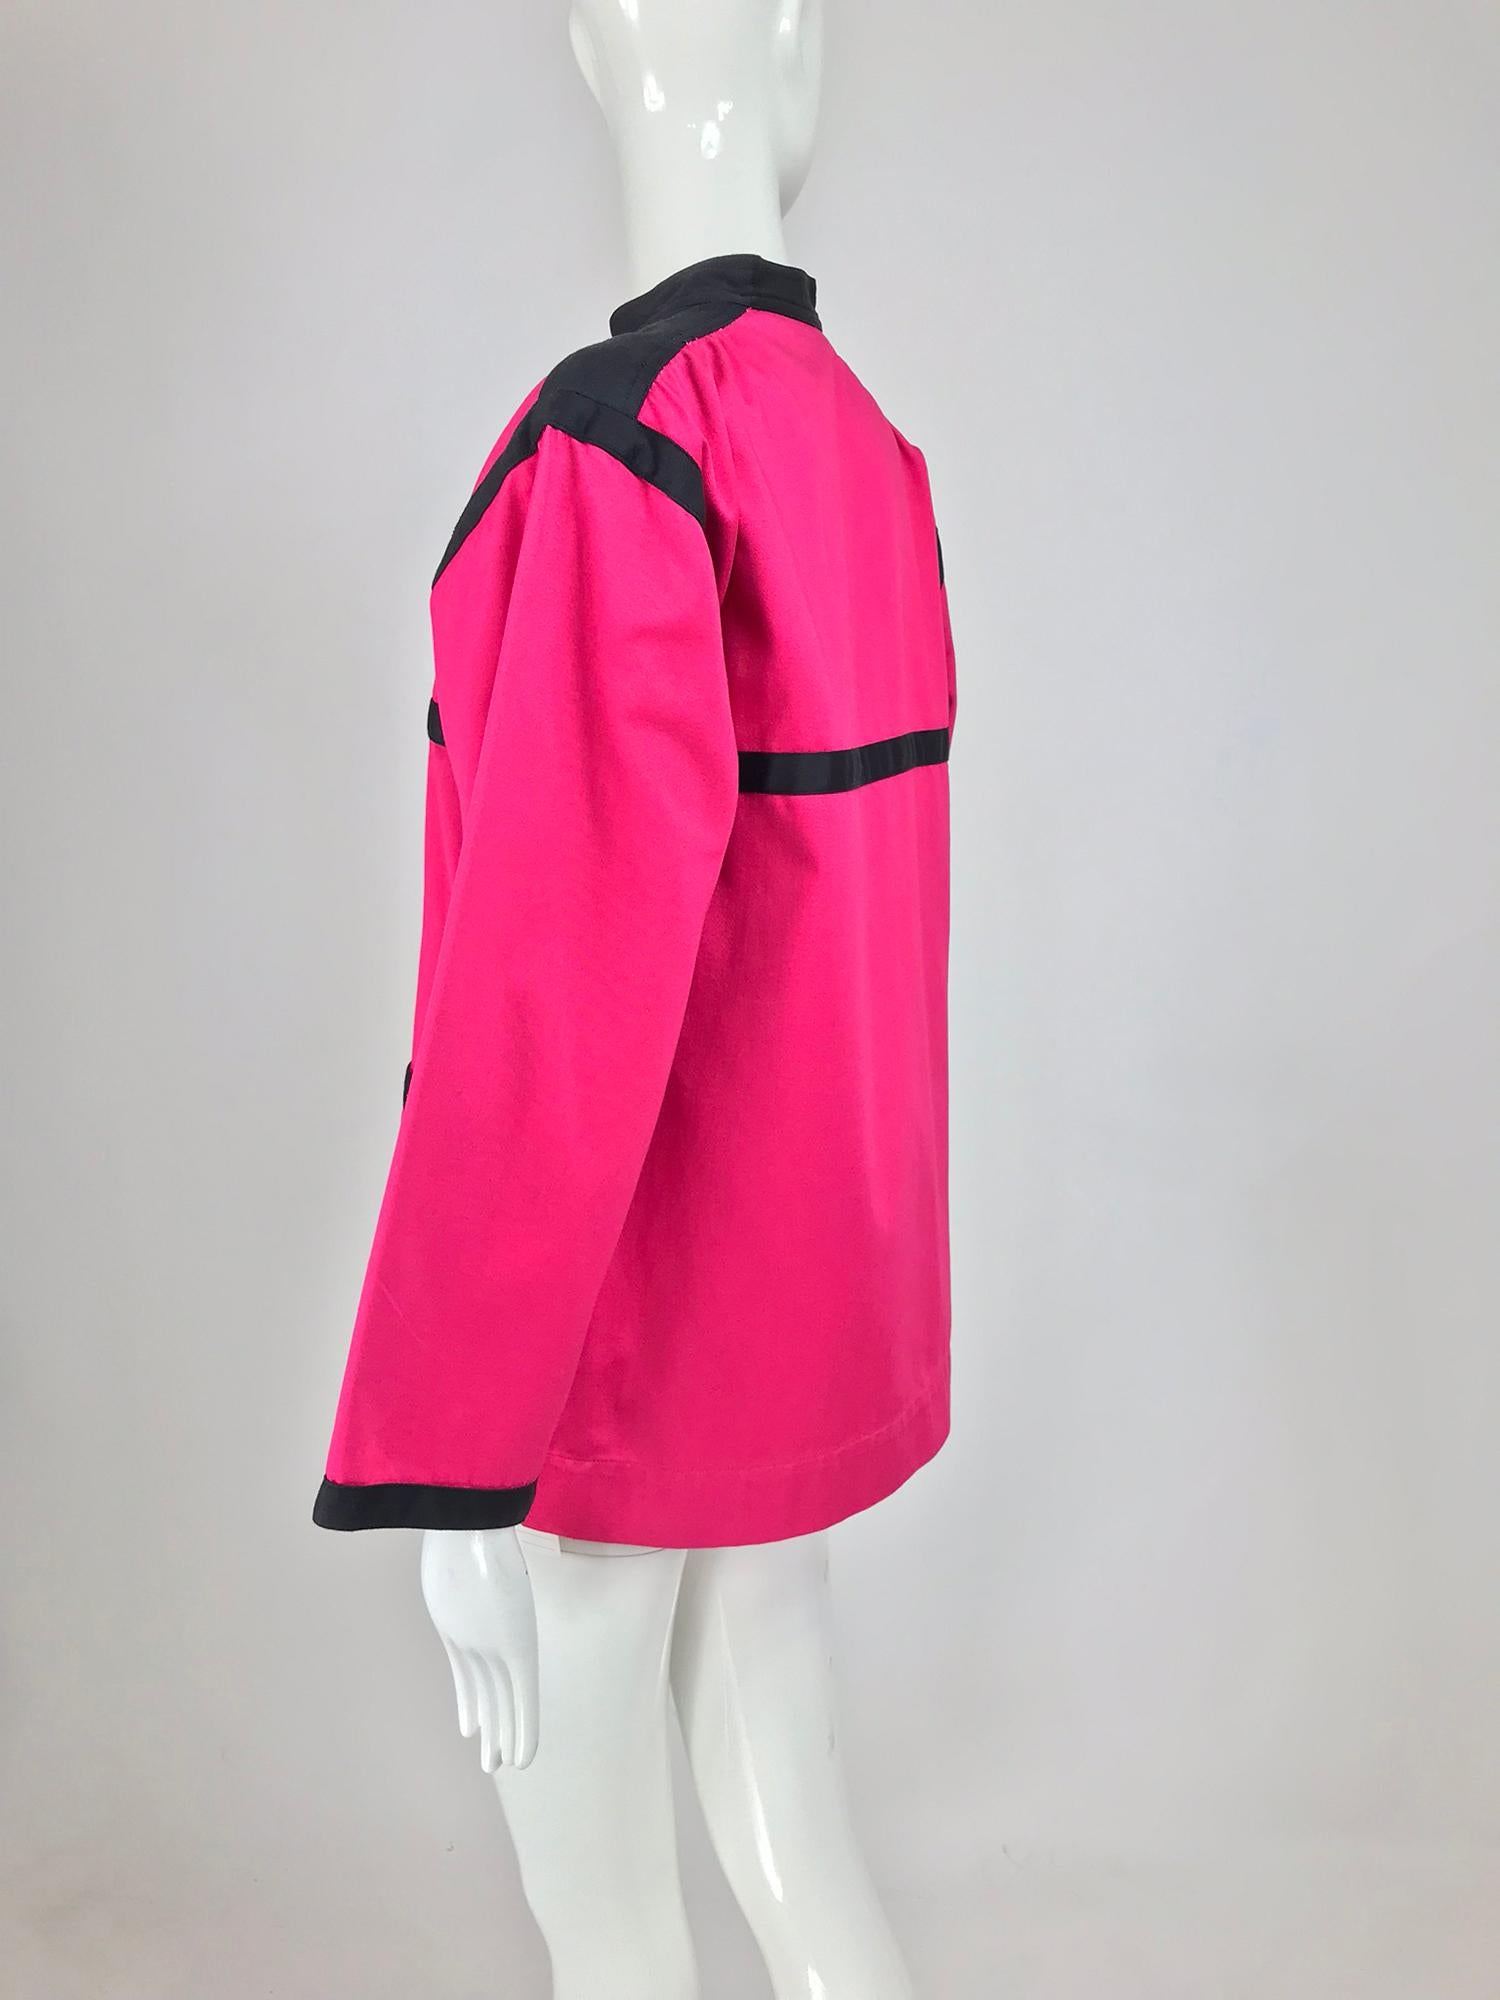 Yves Saint Laurent Hot Pink Colour Block Jacket 1970s For Sale 4